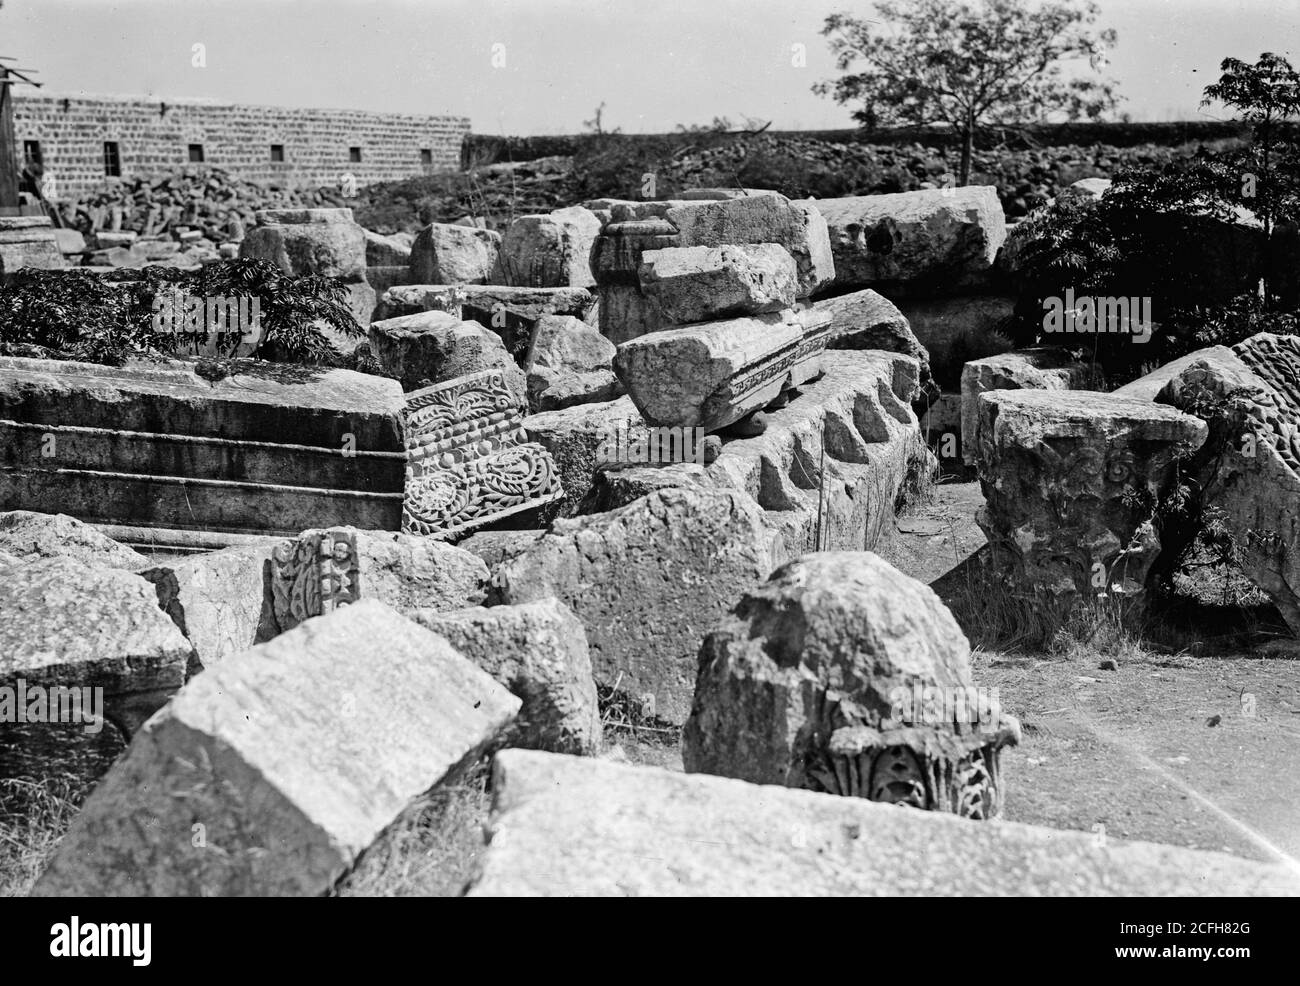 Didascalia originale: Vista del nord. Notevoli resti della sinagoga di Cafarnao. Grandi blocchi di pietra con incisioni per travi di tetto - posizione: Israele--Capernaum (città) ca. 1900 Foto Stock